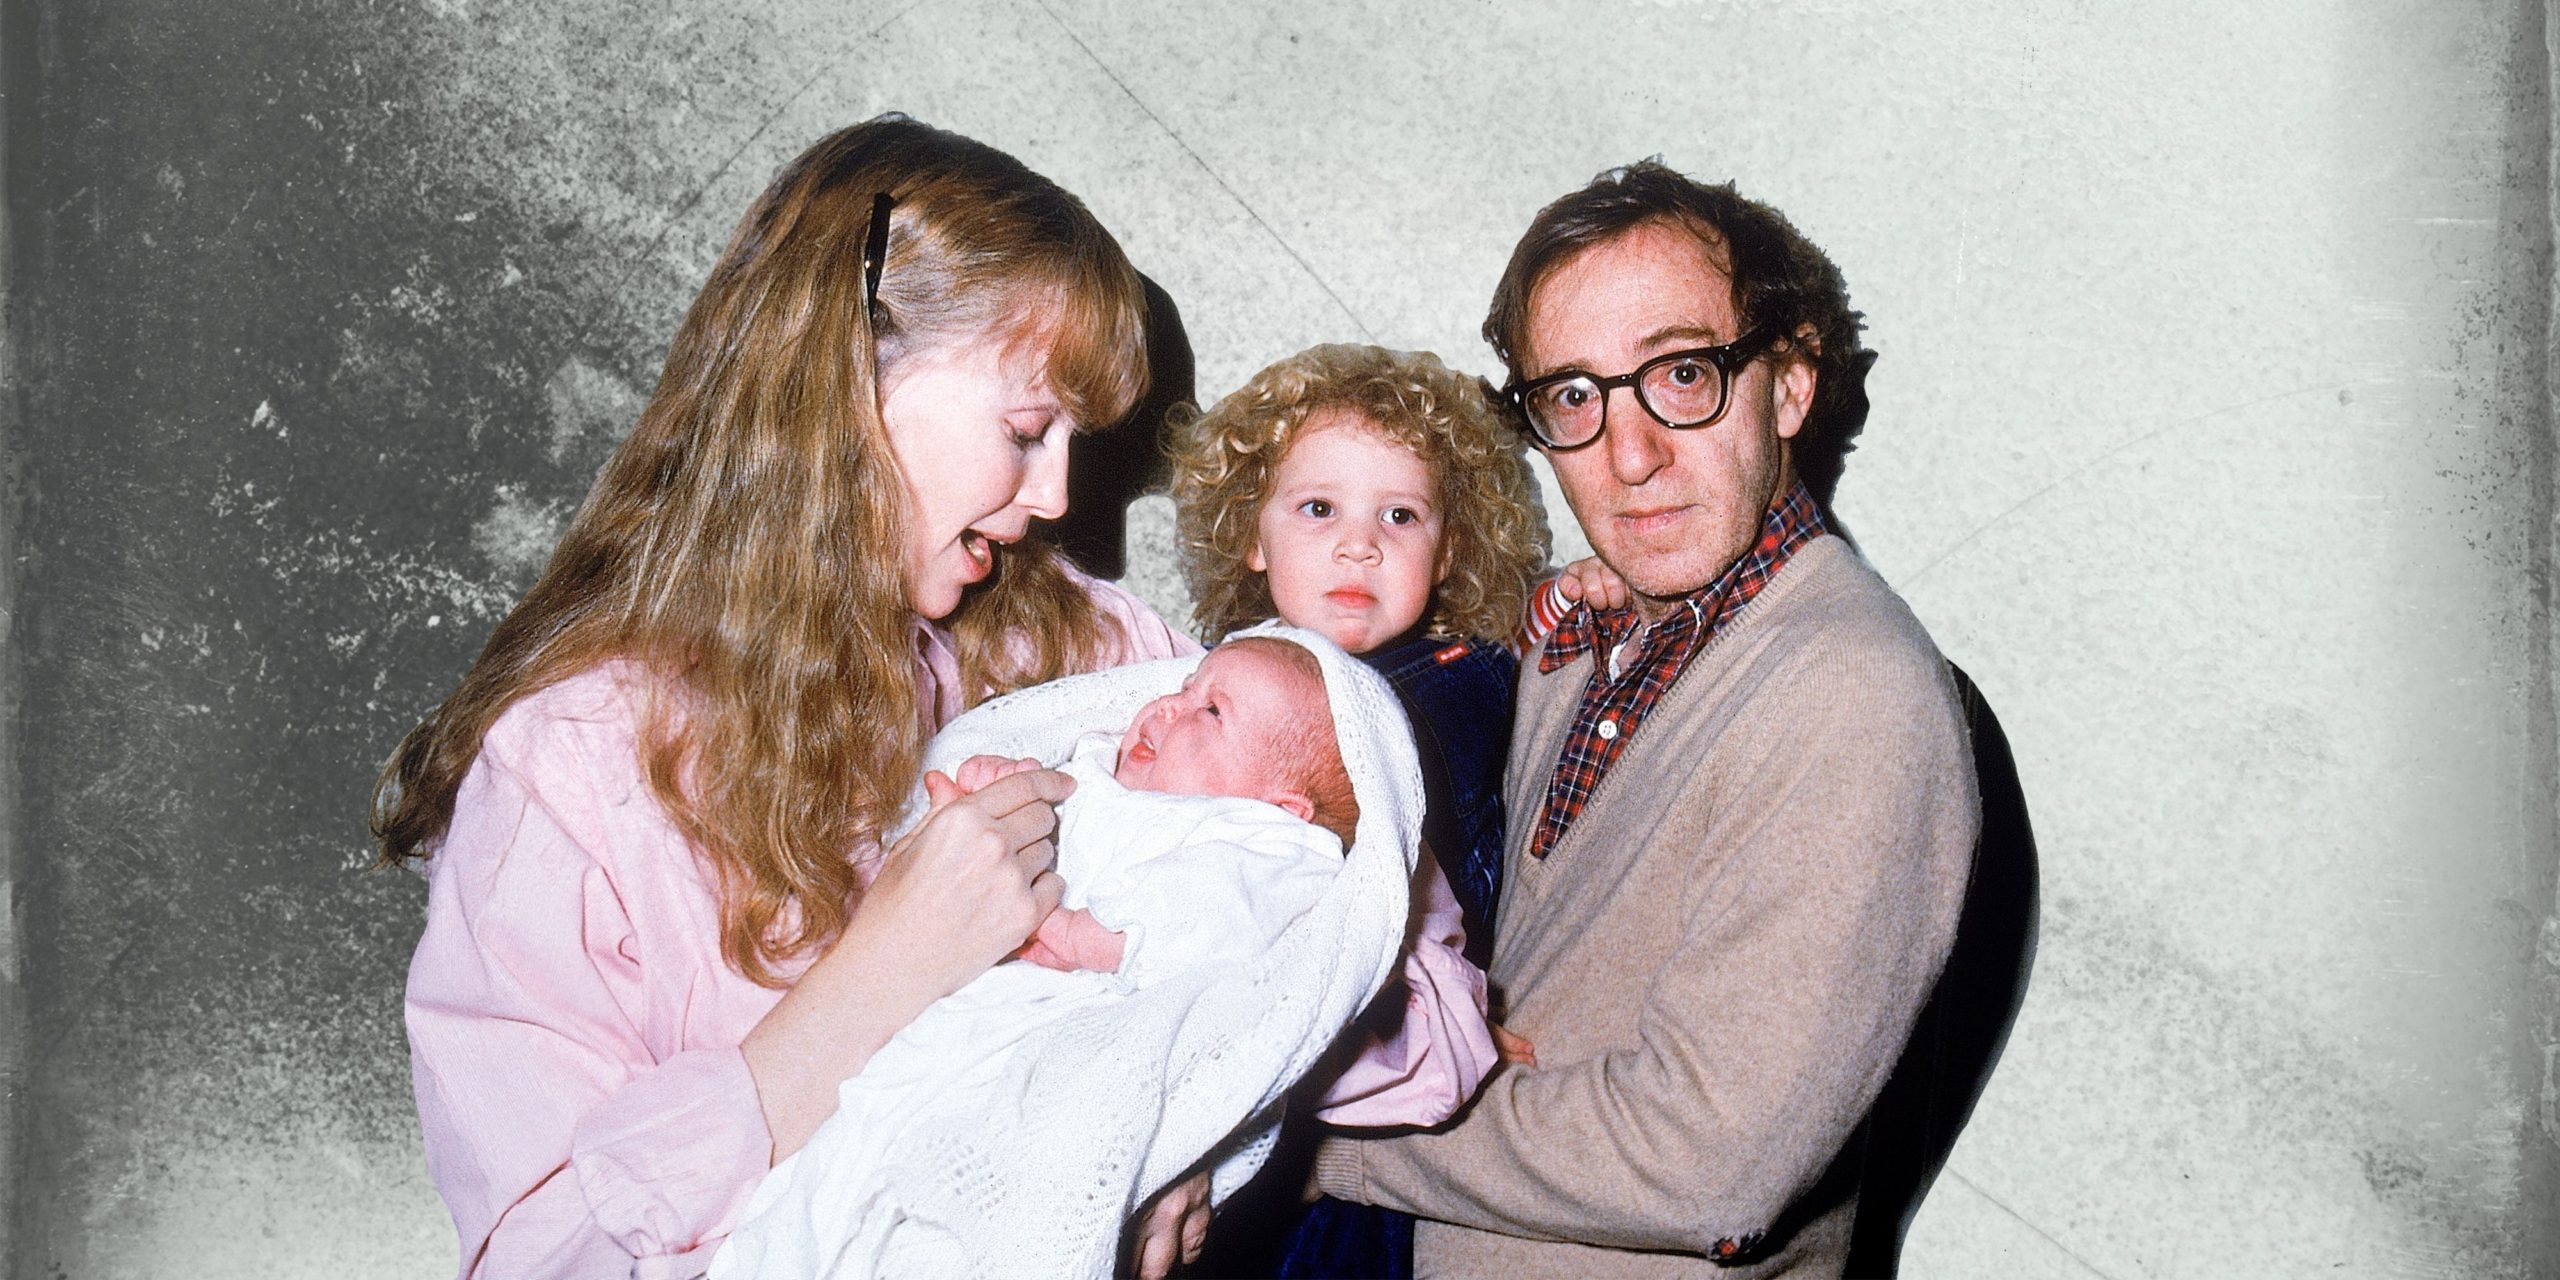 Cena da série documental Allen v. Farrow. Nela, vemos uma fotografia antiga de Woody Allen, branco, idoso, de cabelos pretos e óculos redondos com armação escura, com sua filha Dylan no colo. Ao seu lado, está sua esposa Mia Farrow, branca, loira, segurando o filho recém-nascido no colo. 